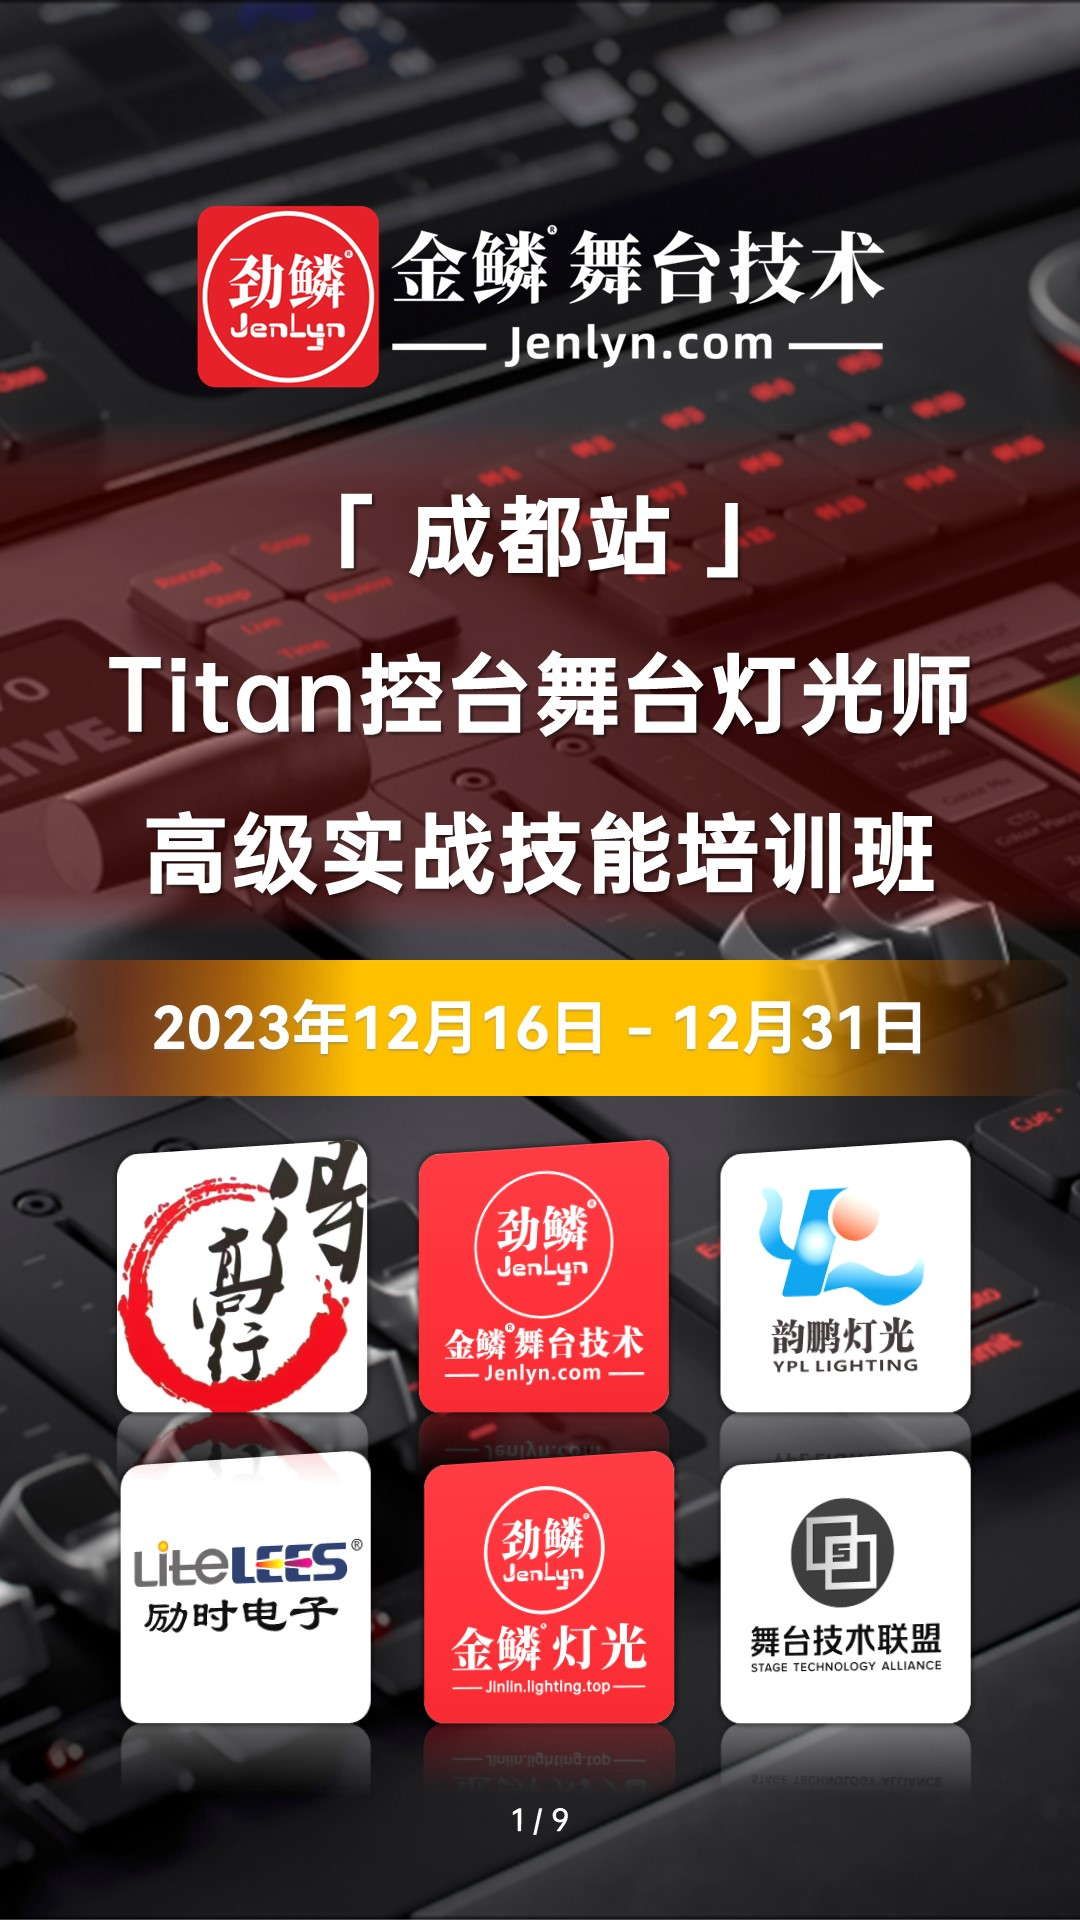 2023年12月“成都站”Titan控台高级实操技术培训班开启报名